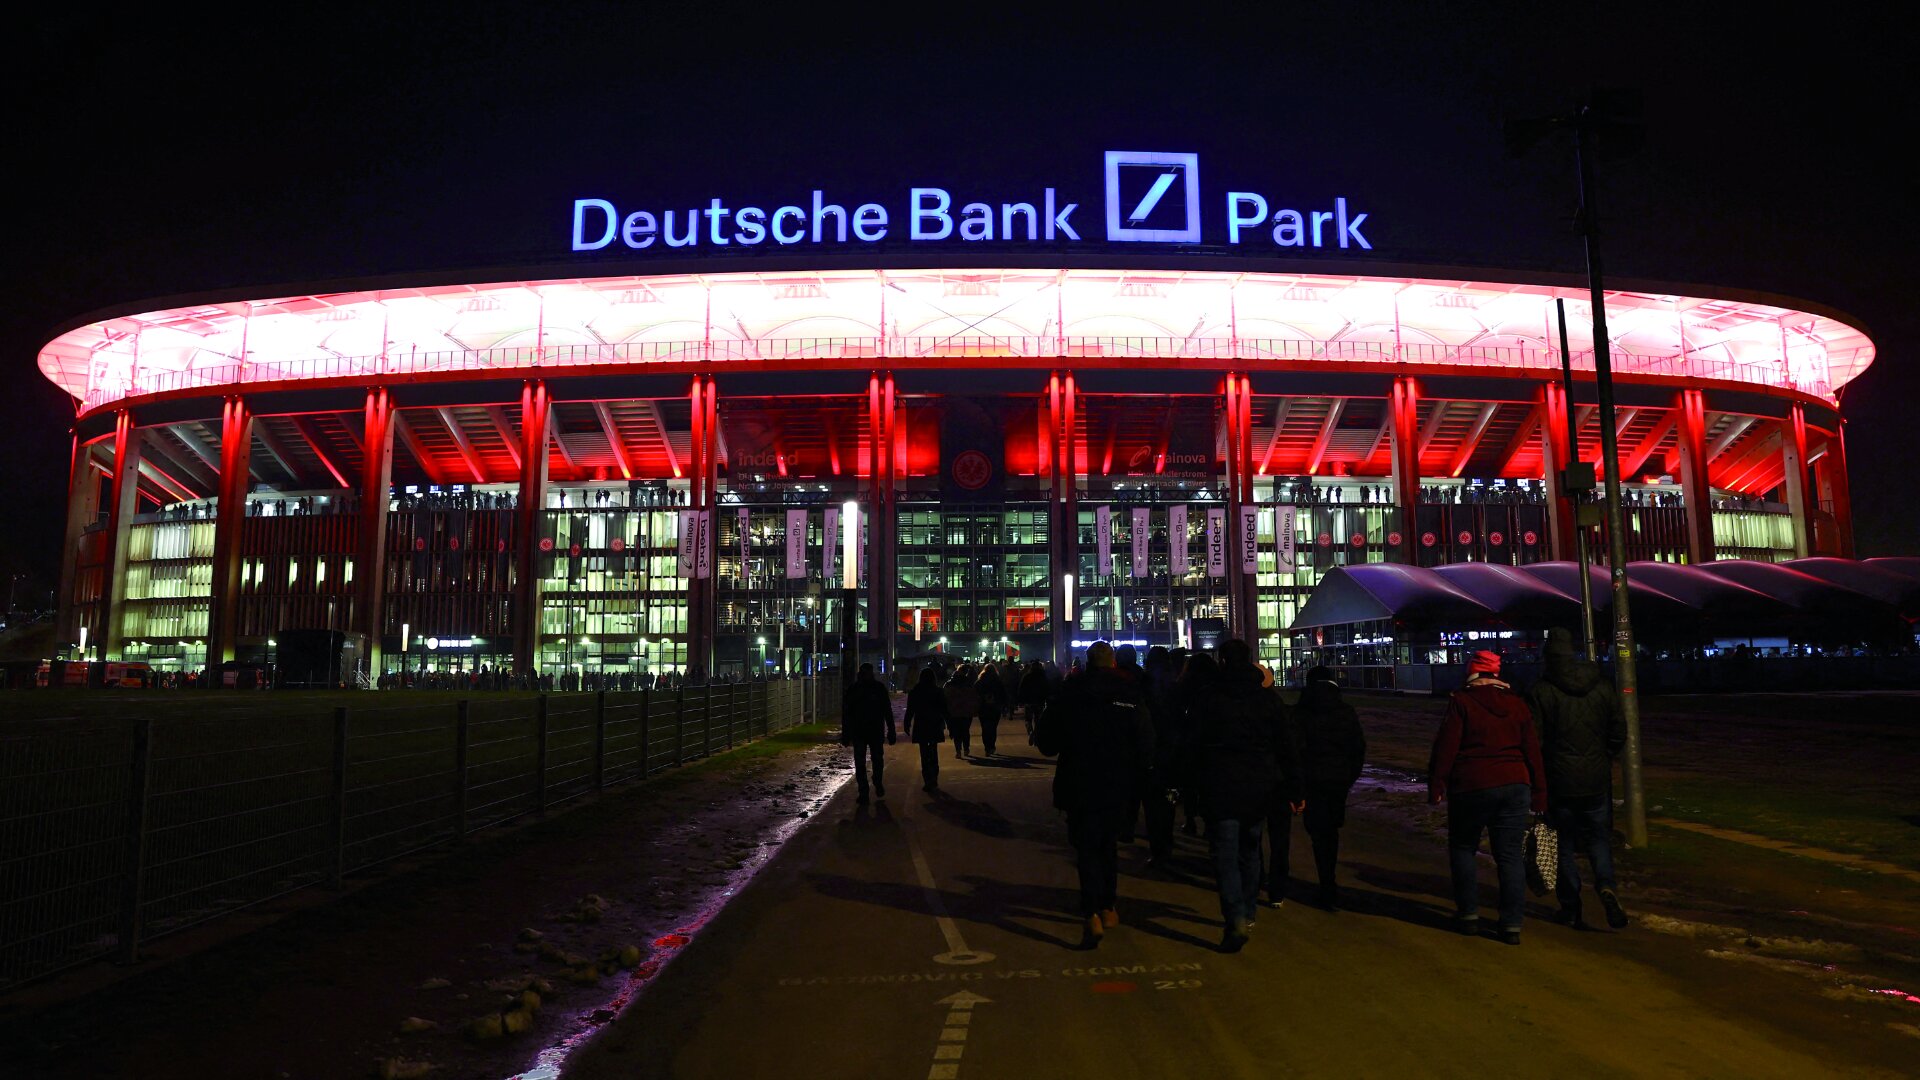 Frankfurt Arena